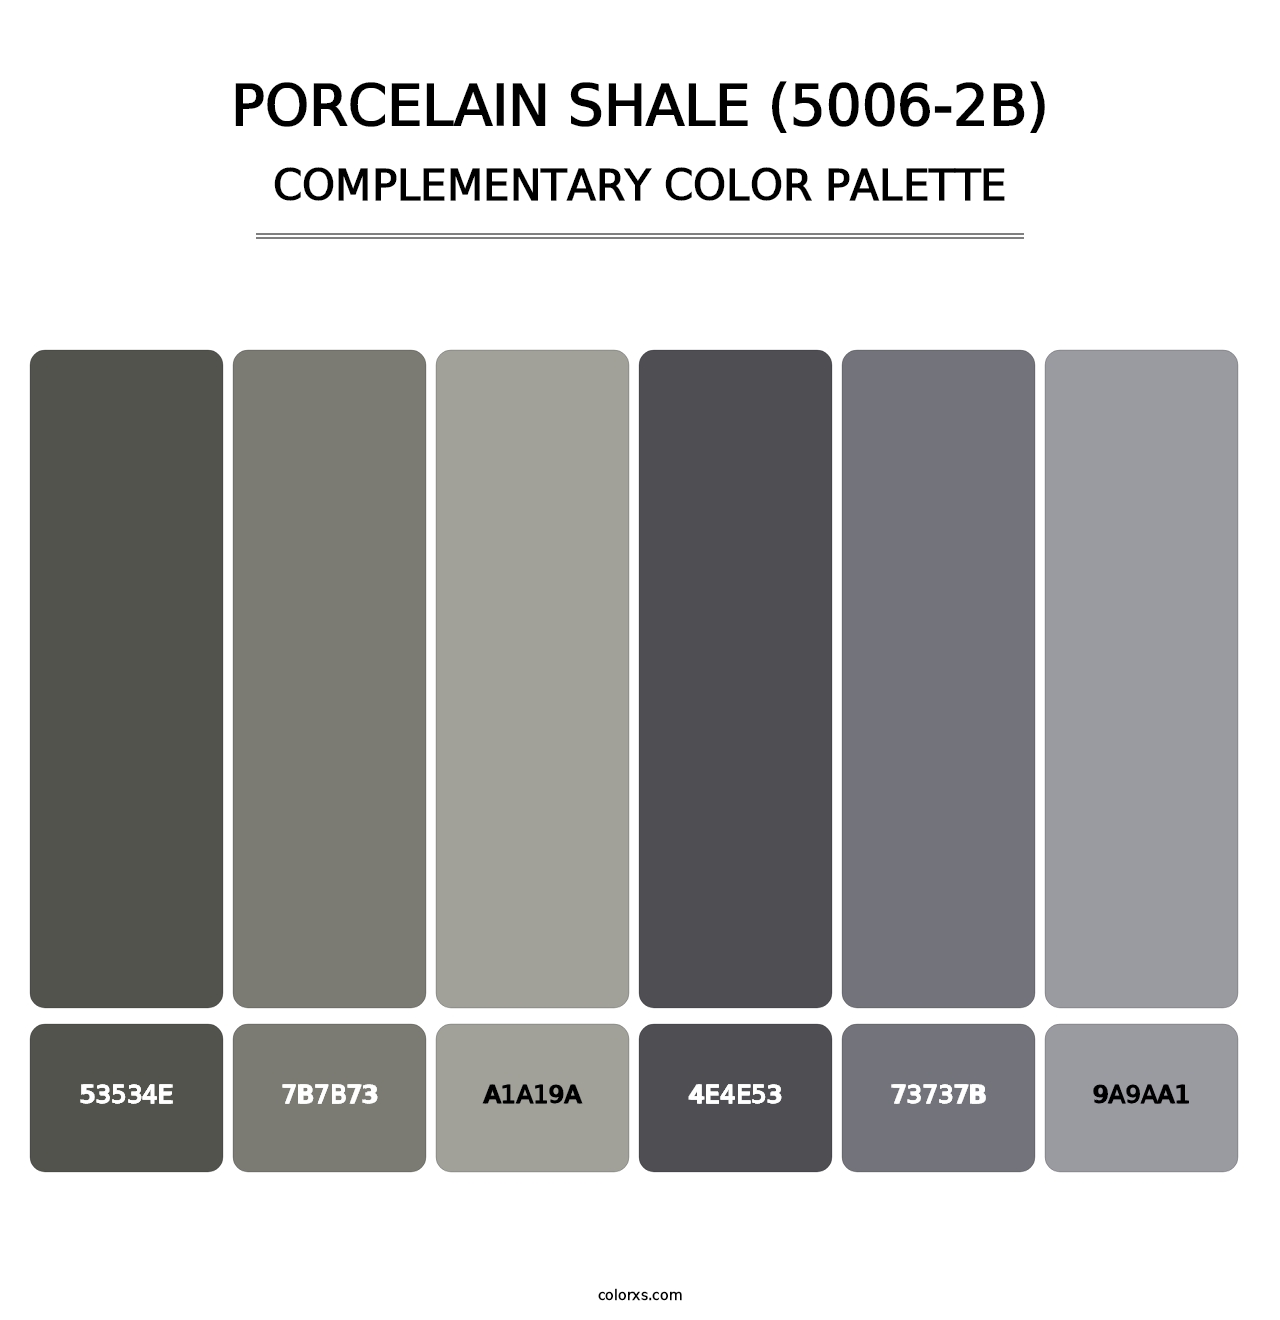 Porcelain Shale (5006-2B) - Complementary Color Palette